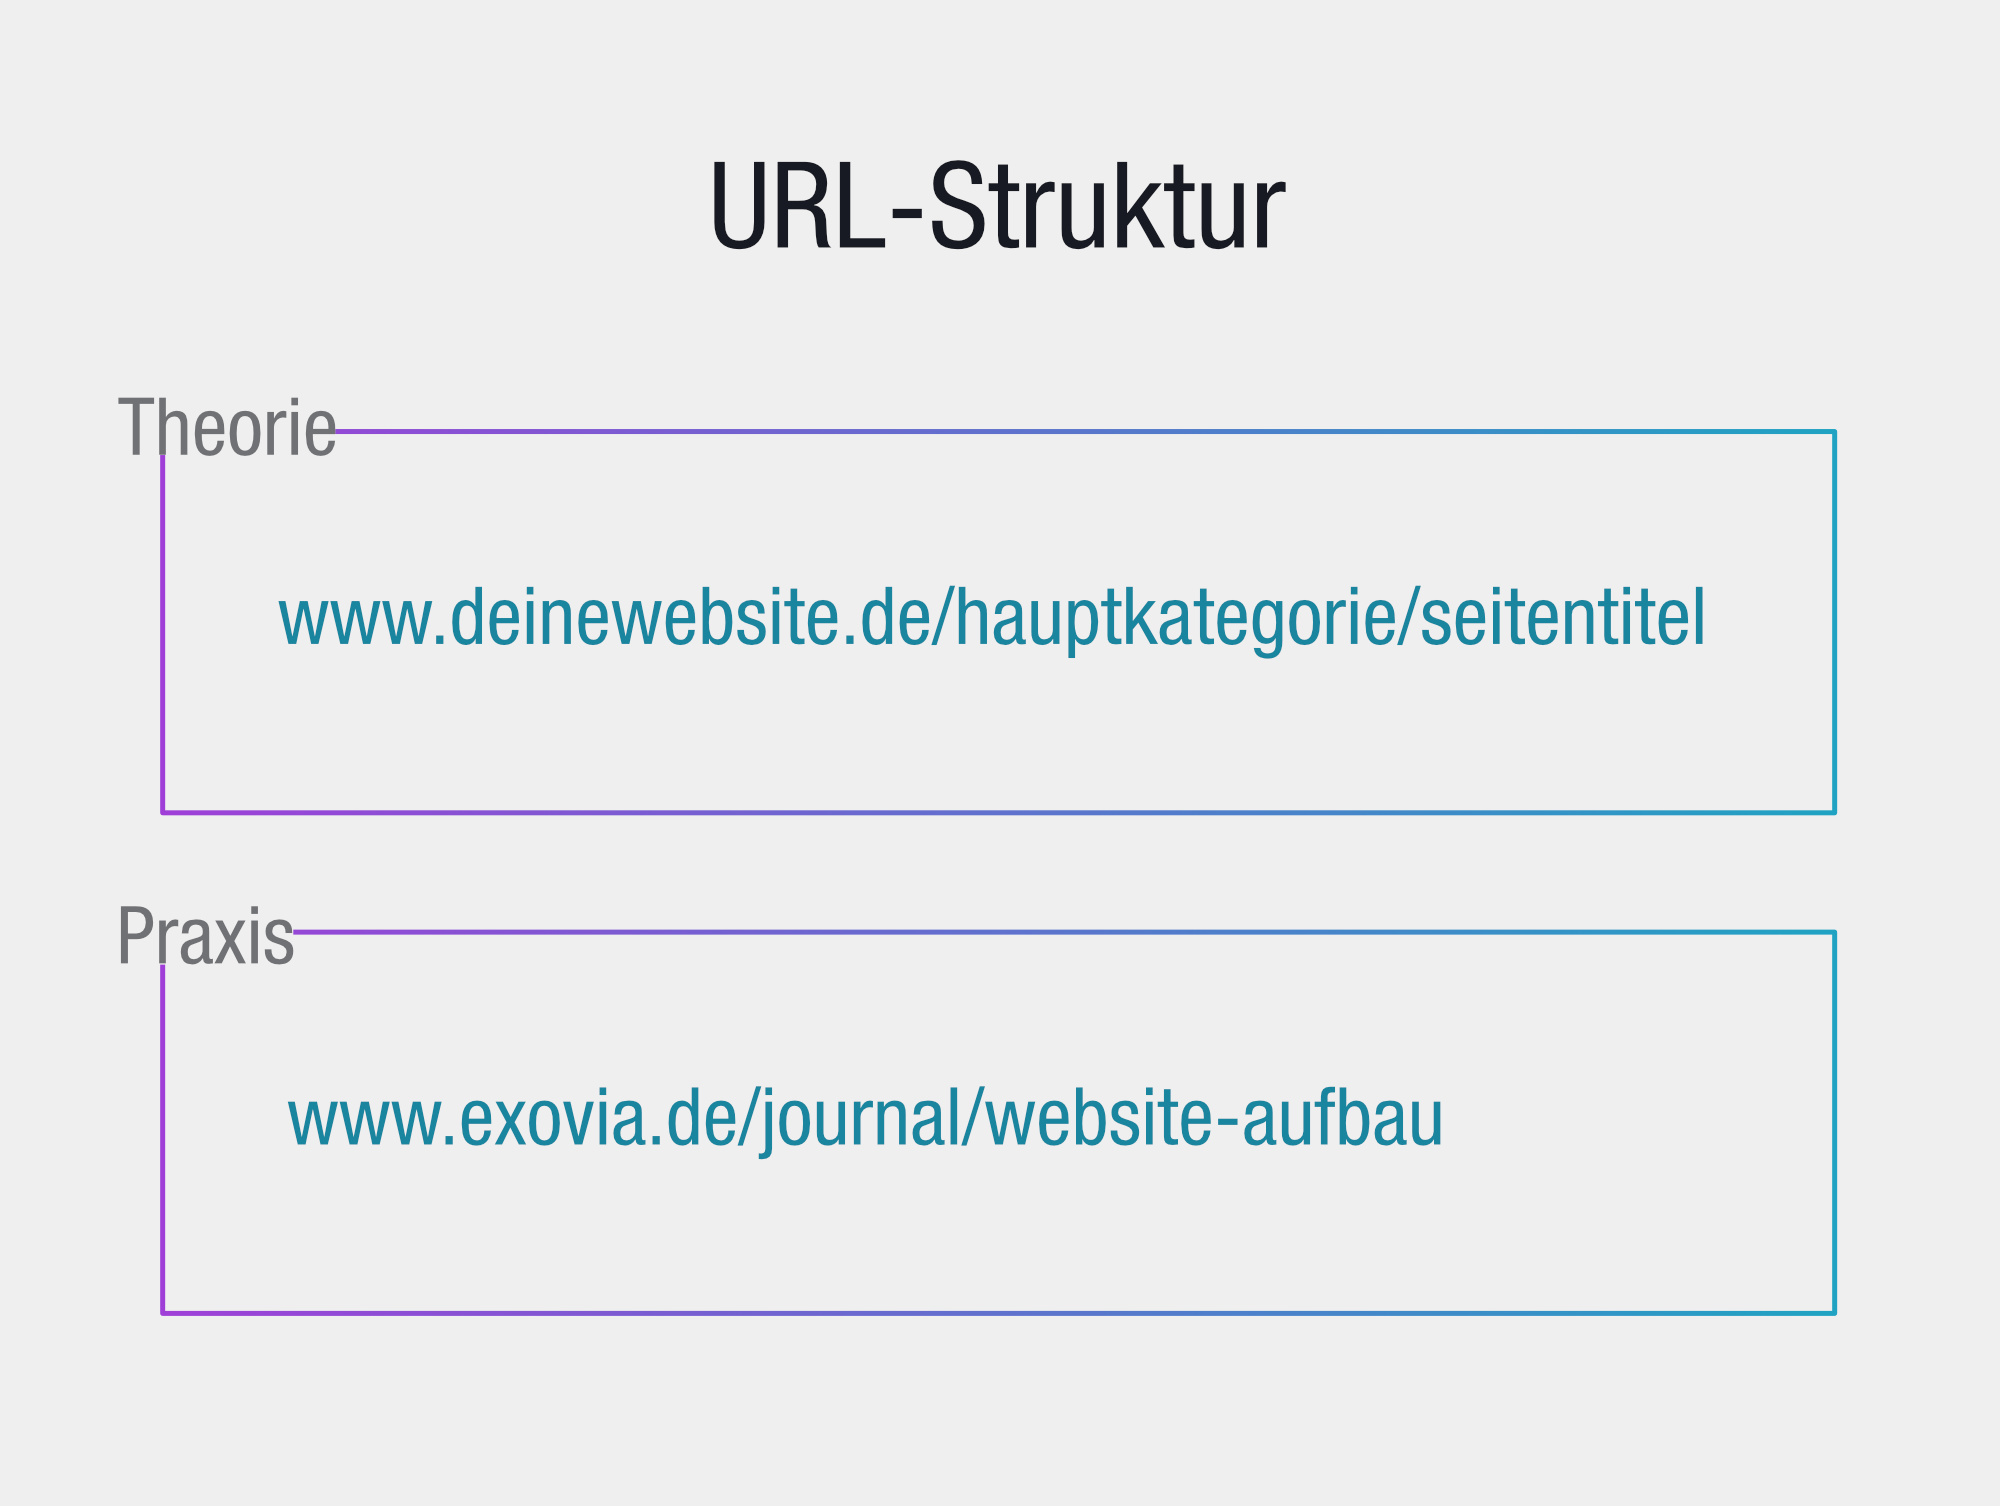 Festlegung der URL-Struktur im Rahmen des Website-Aufbaus